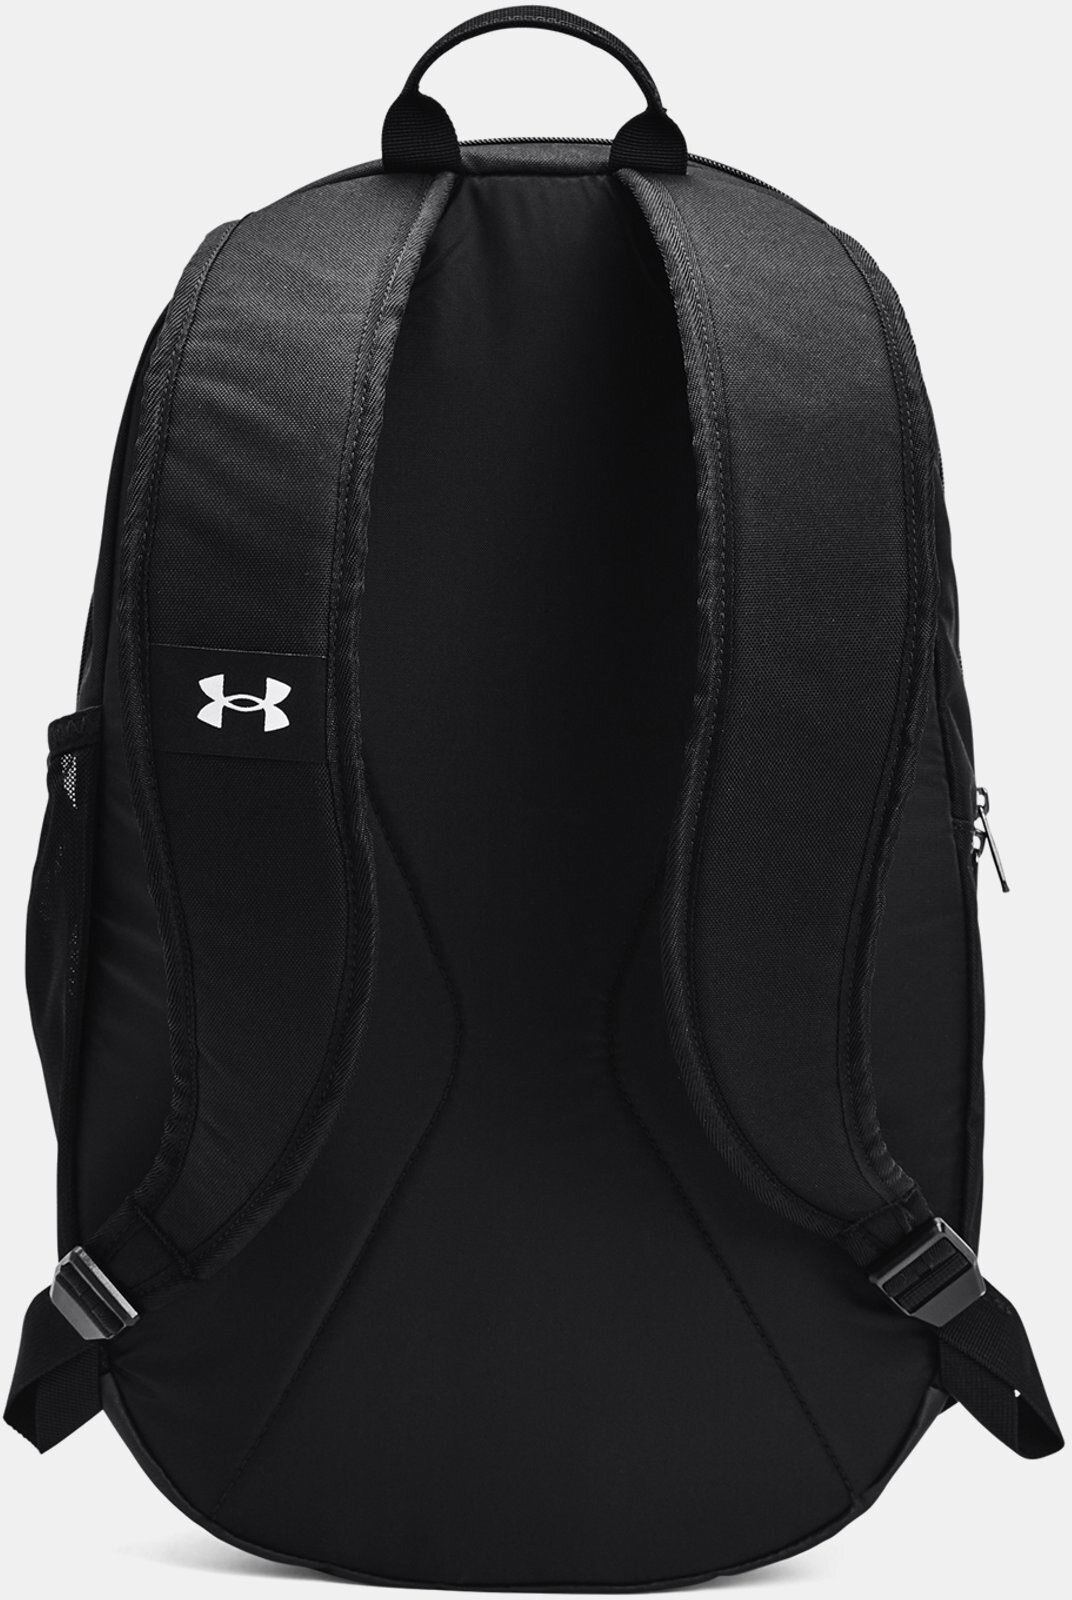 Рюкзак Under Armour Hustle Lite Backpack черный-белый